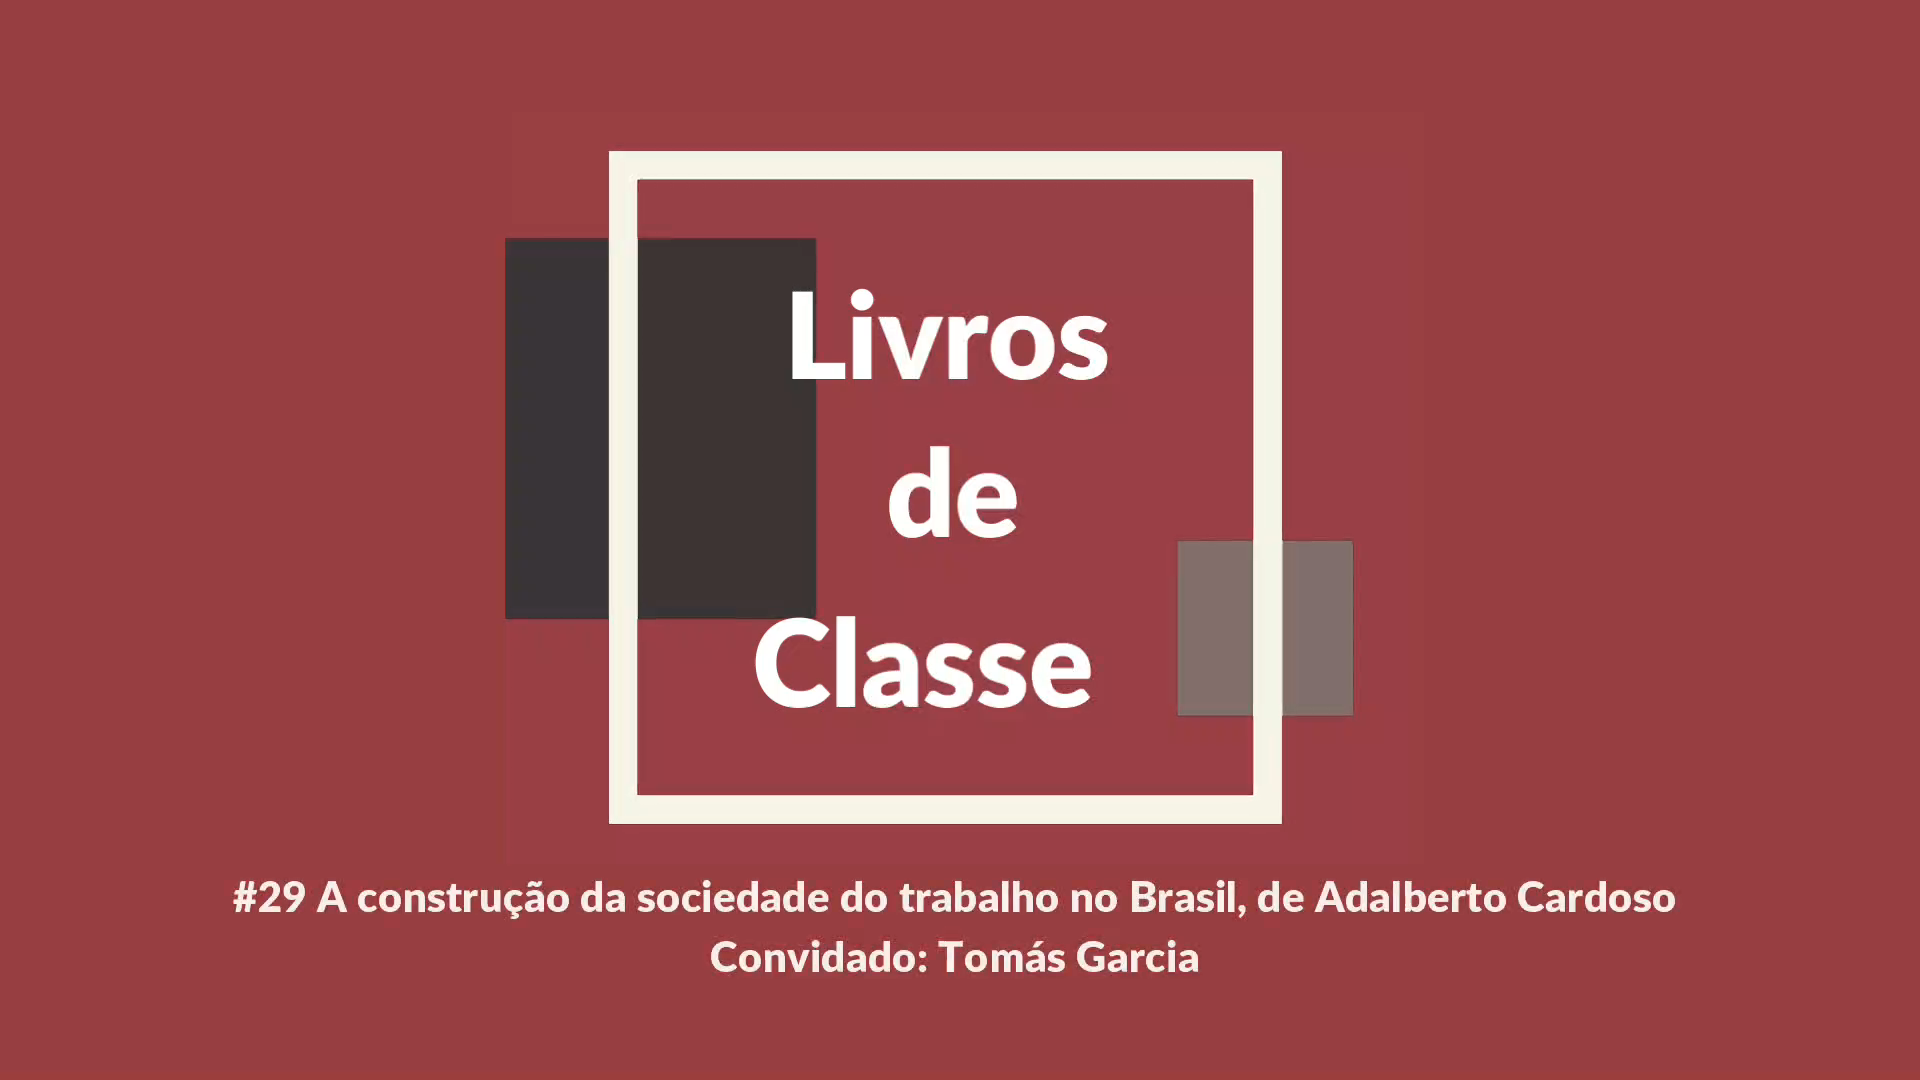 Livros de Classe #29: A construção da sociedade do trabalho no Brasil, de Adalberto Cardoso, por Tomás Garcia